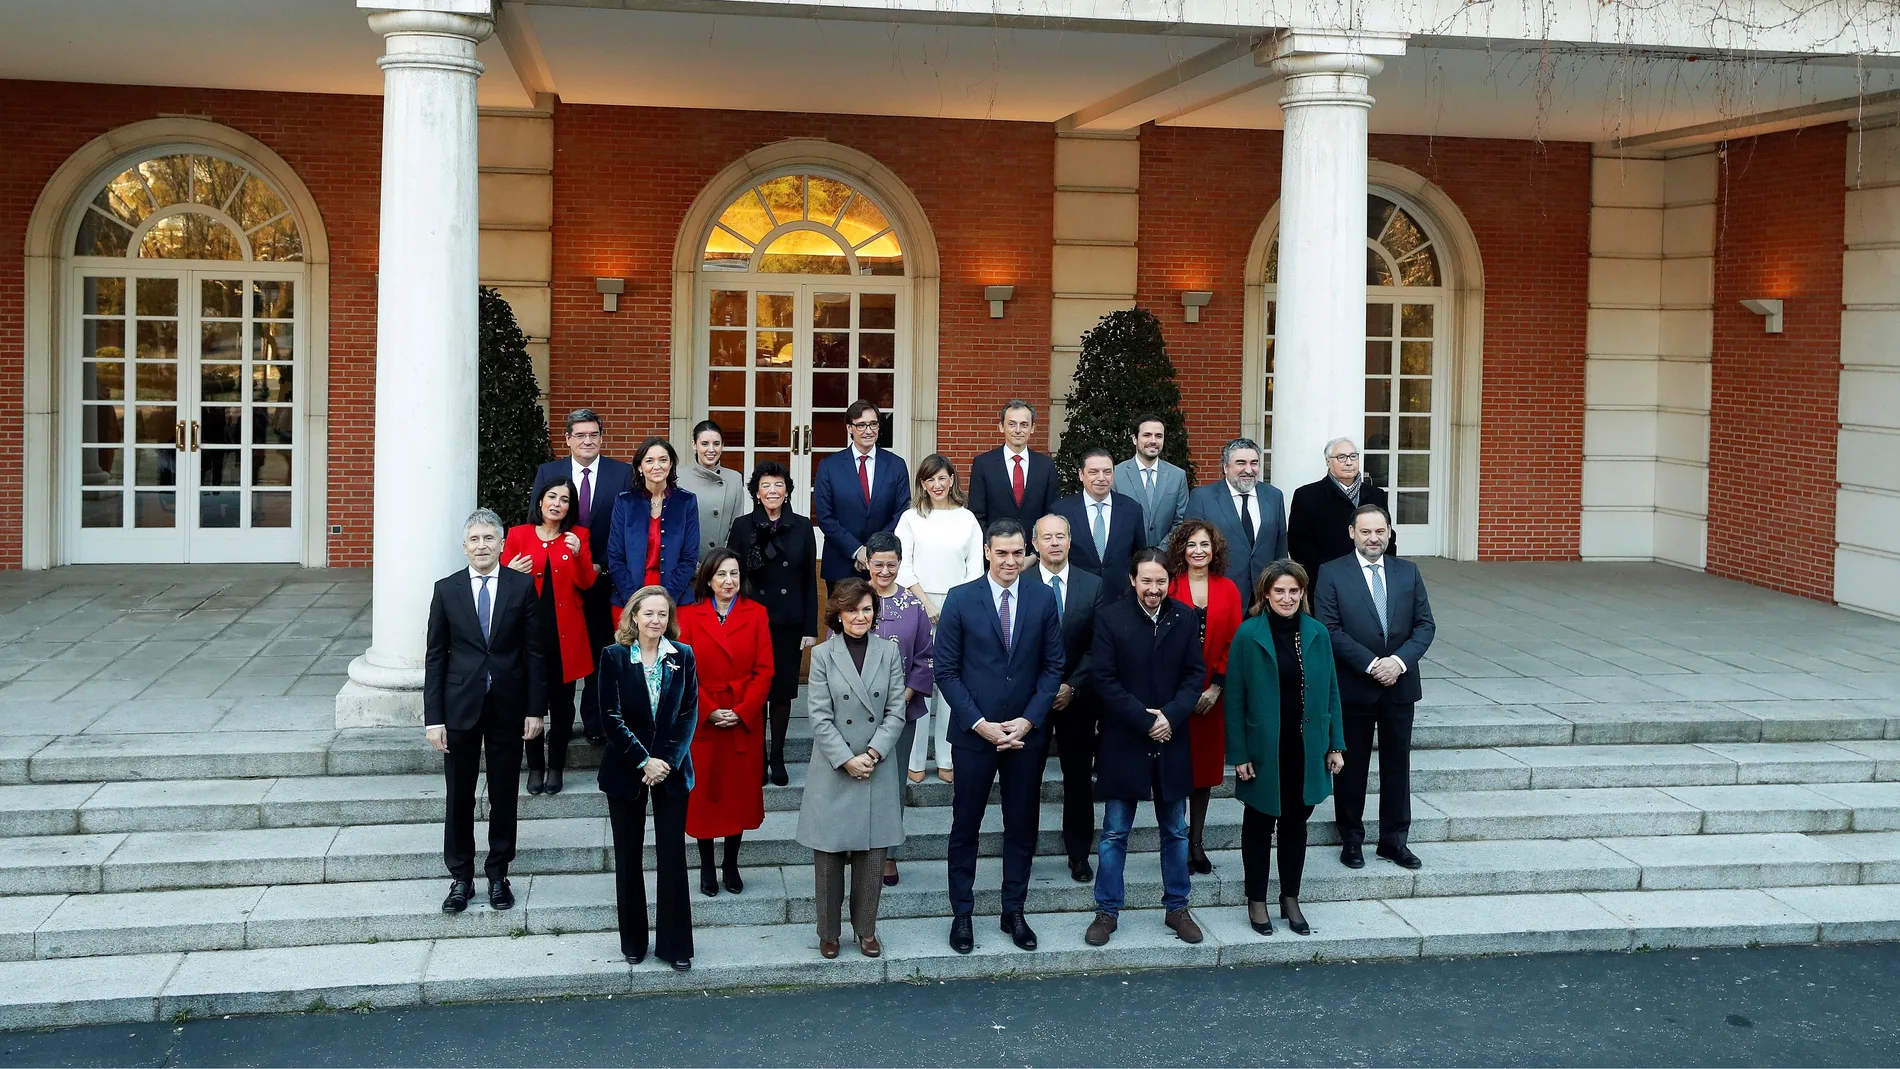 Video de reemplazo | Pedro Sánchez preside hoy el primer Consejo de Ministros del Gobierno de coalición